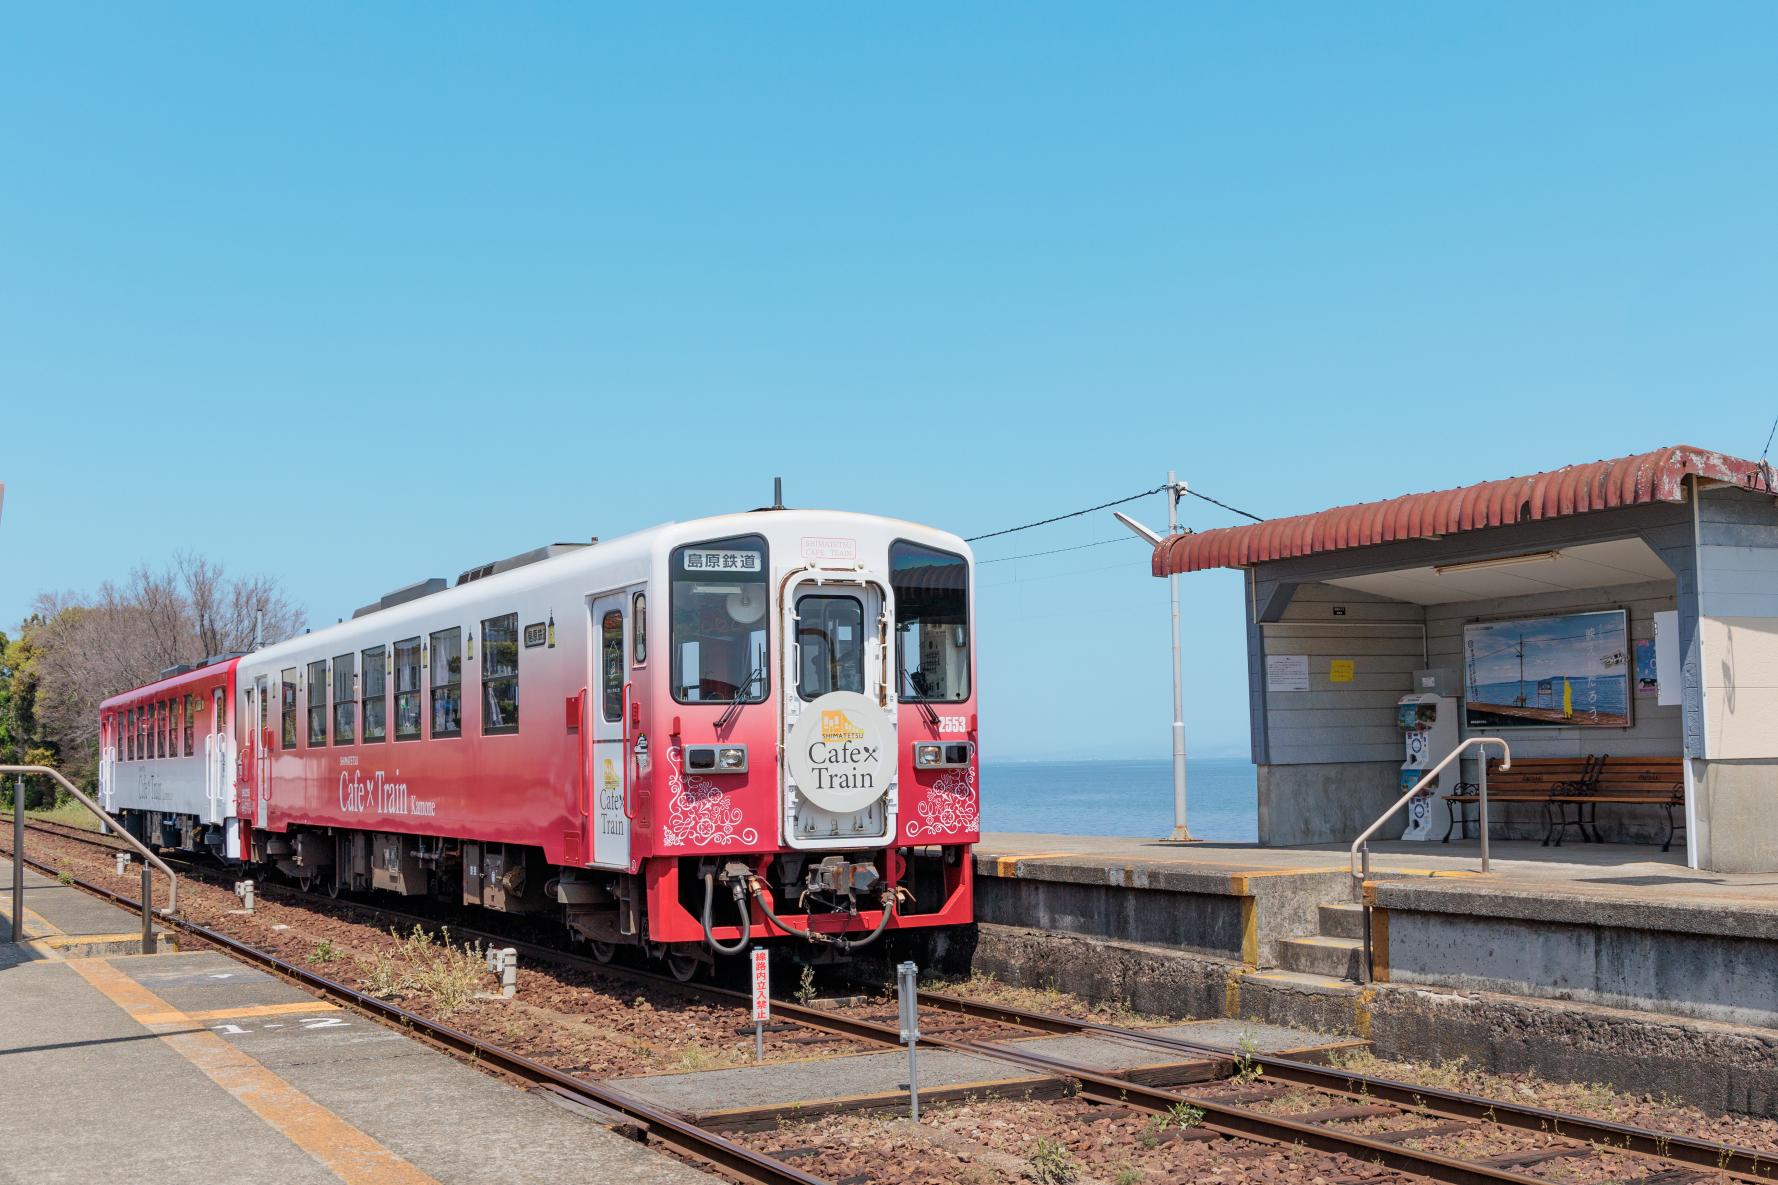 Shimabara Railway's Café Train-0